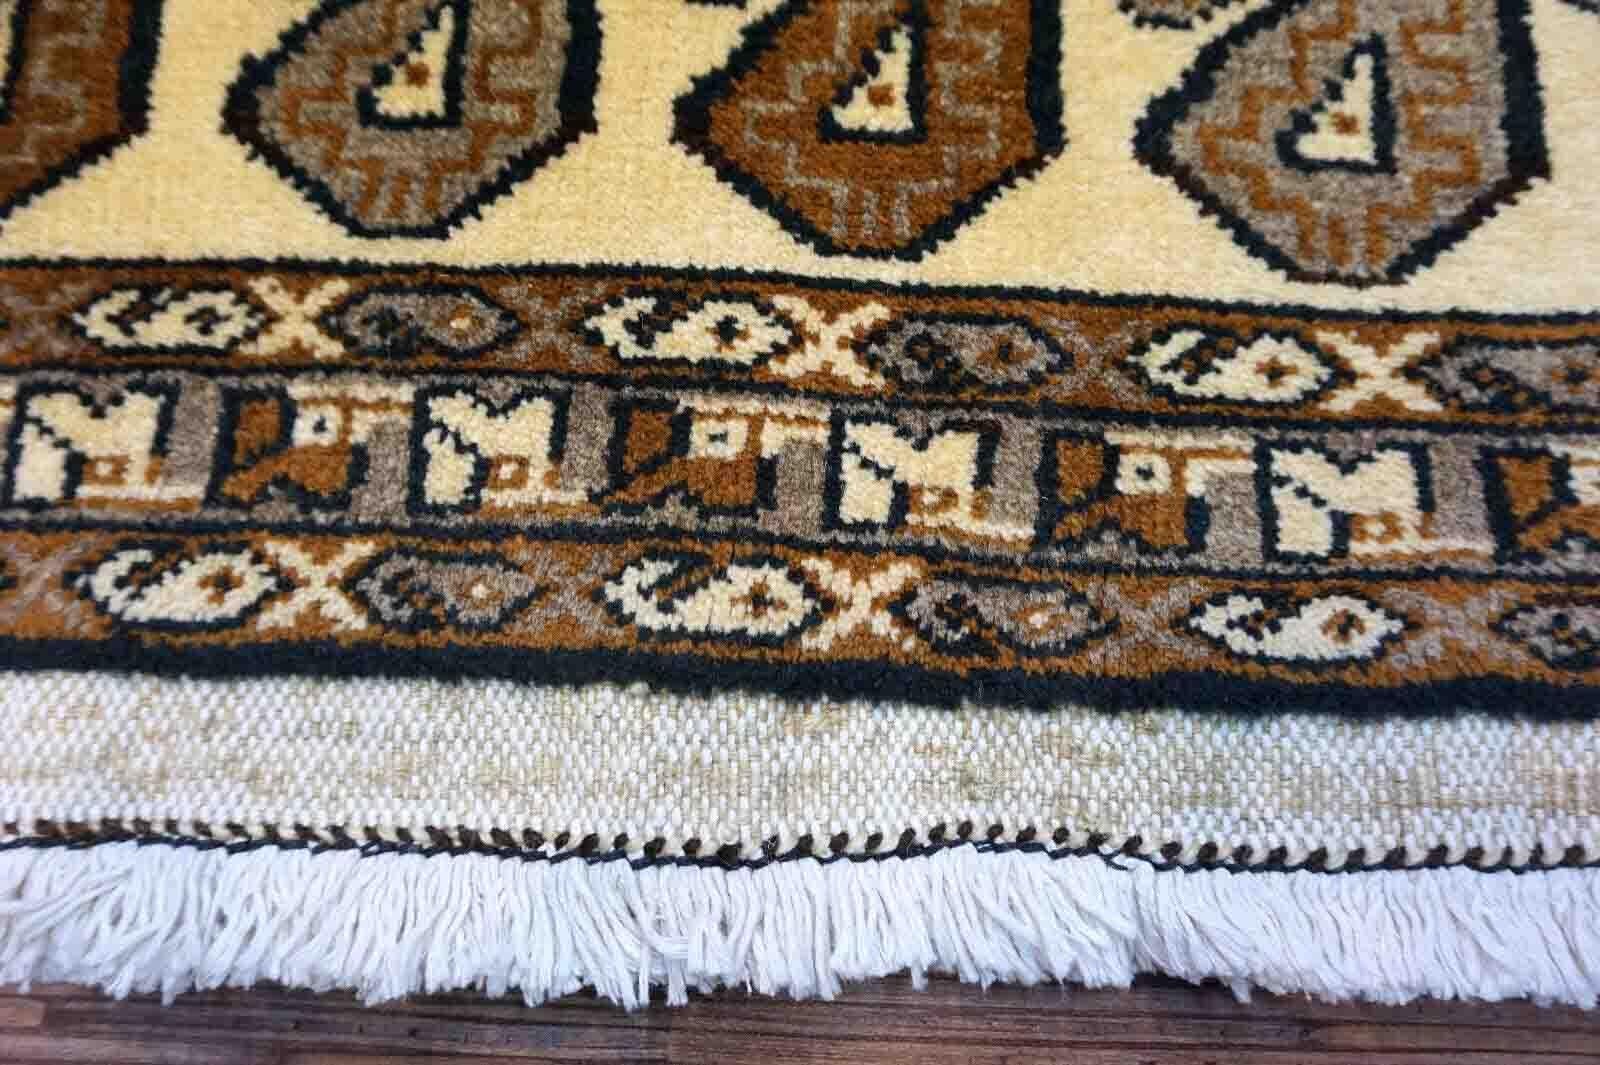 Handgefertigter Gabbeh-Teppich in Beige mit sich wiederholendem Paisleymuster. Der Teppich stammt aus dem Ende des 20. Jahrhunderts und ist in gutem Originalzustand.

-Zustand: original gut,

-Umgebung: 1970er Jahre,

-Größe: 3,2' x 6,1' (99cm x